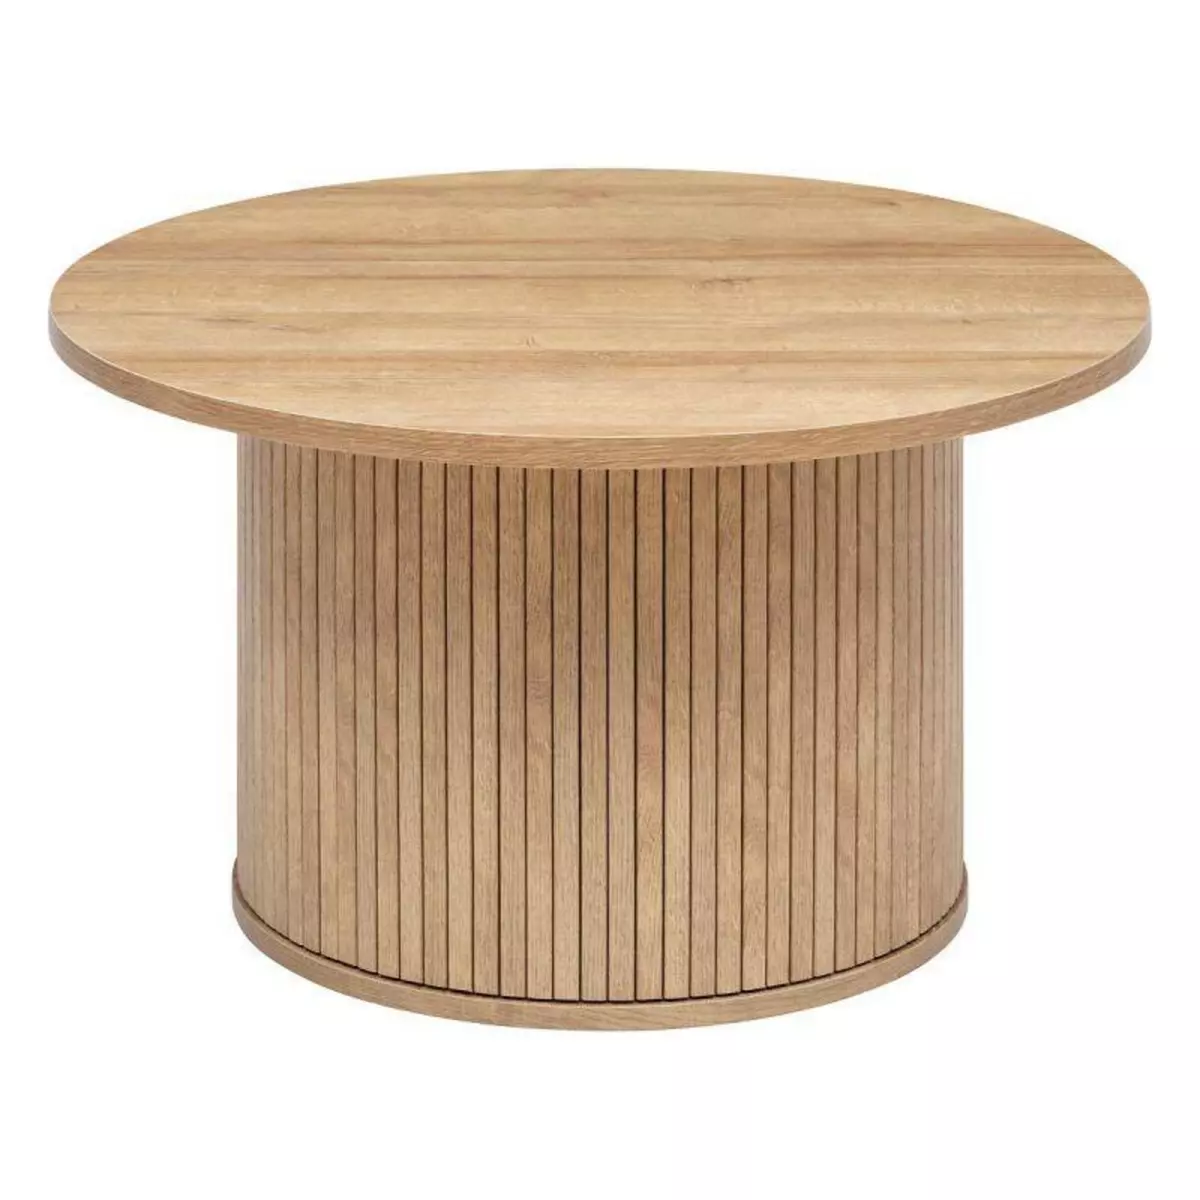  Table Basse Design  Colva  70cm Beige